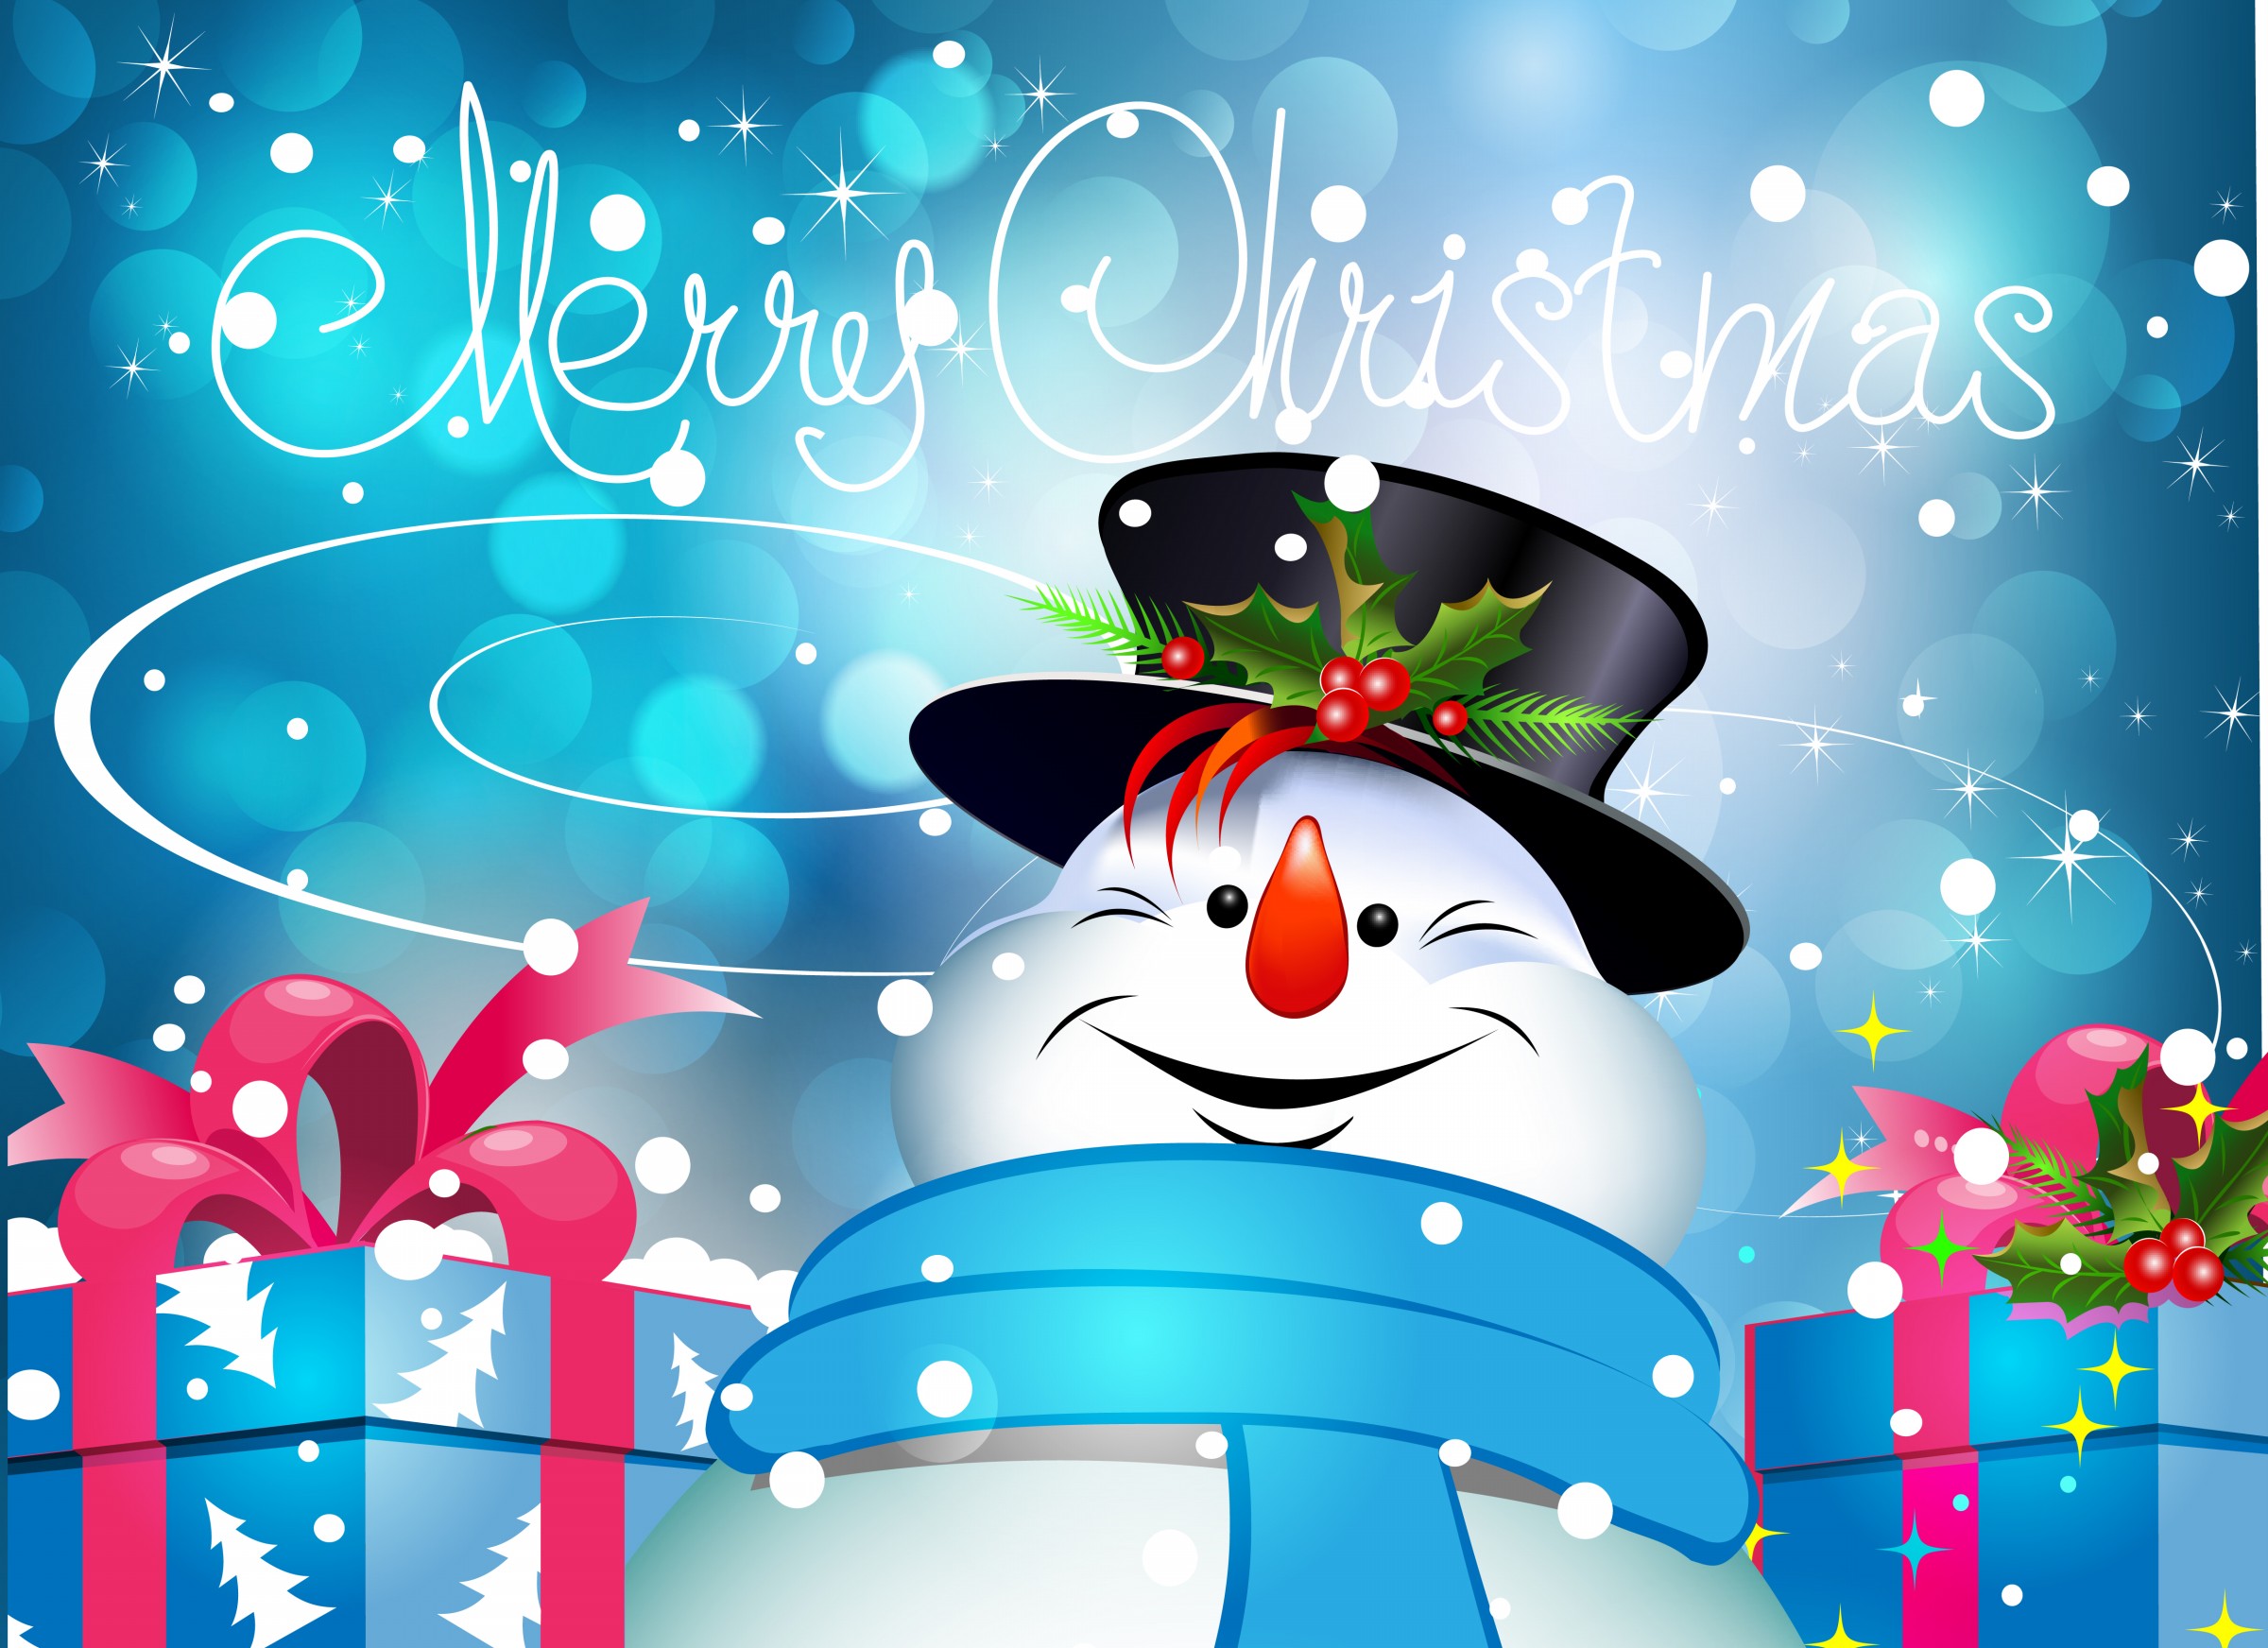   , Christmas Cards 2014 Merry Christmas , Christmas Wallpaper 2014